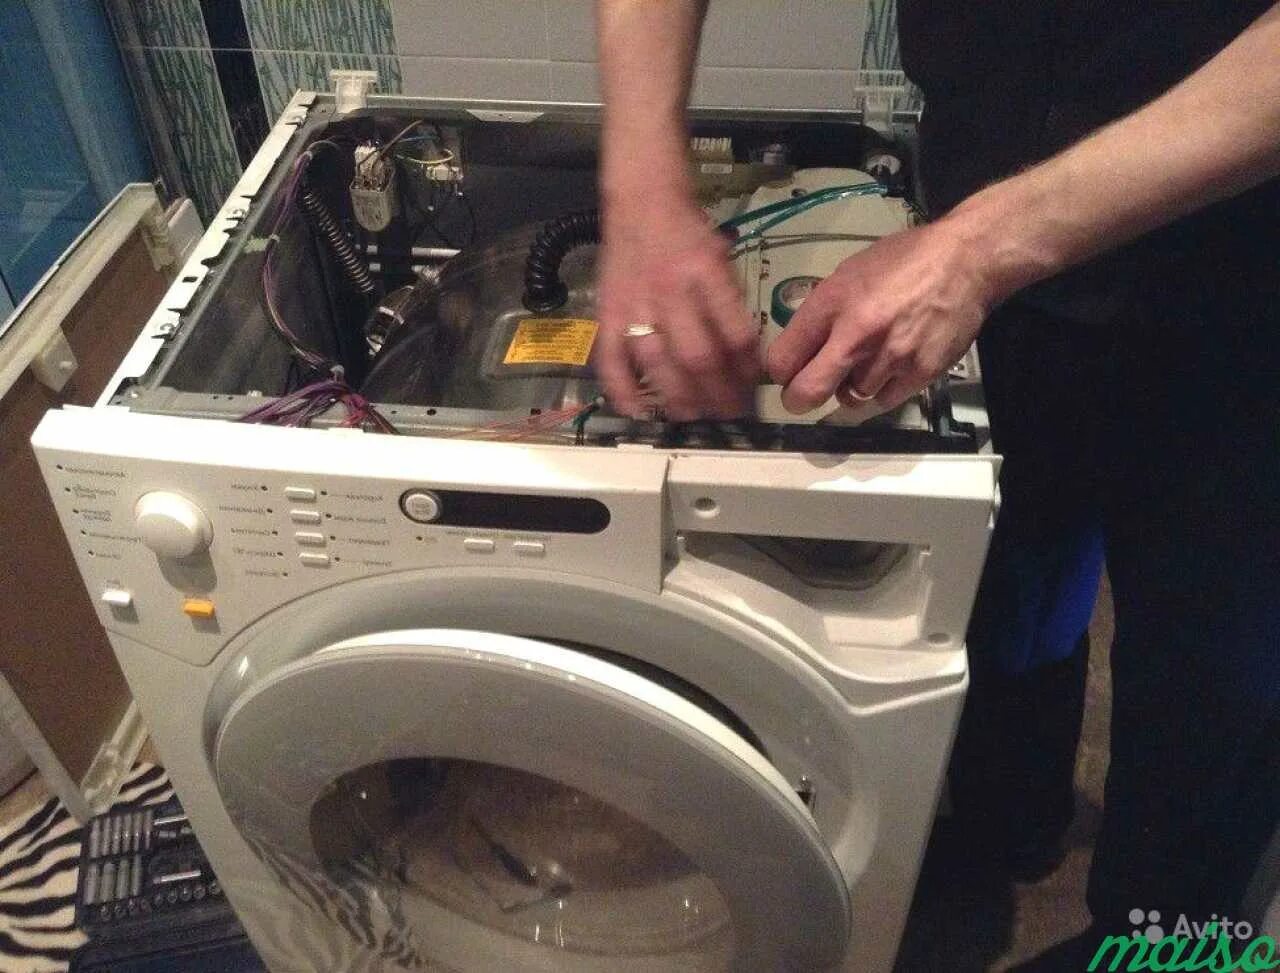 Ремонт стиральных машин ивантеевка. Ремонт стиральных машин. Мастер по ремонту стиральных машинок. Мастер по стиральным машинам. Сломалась стиральная машина.